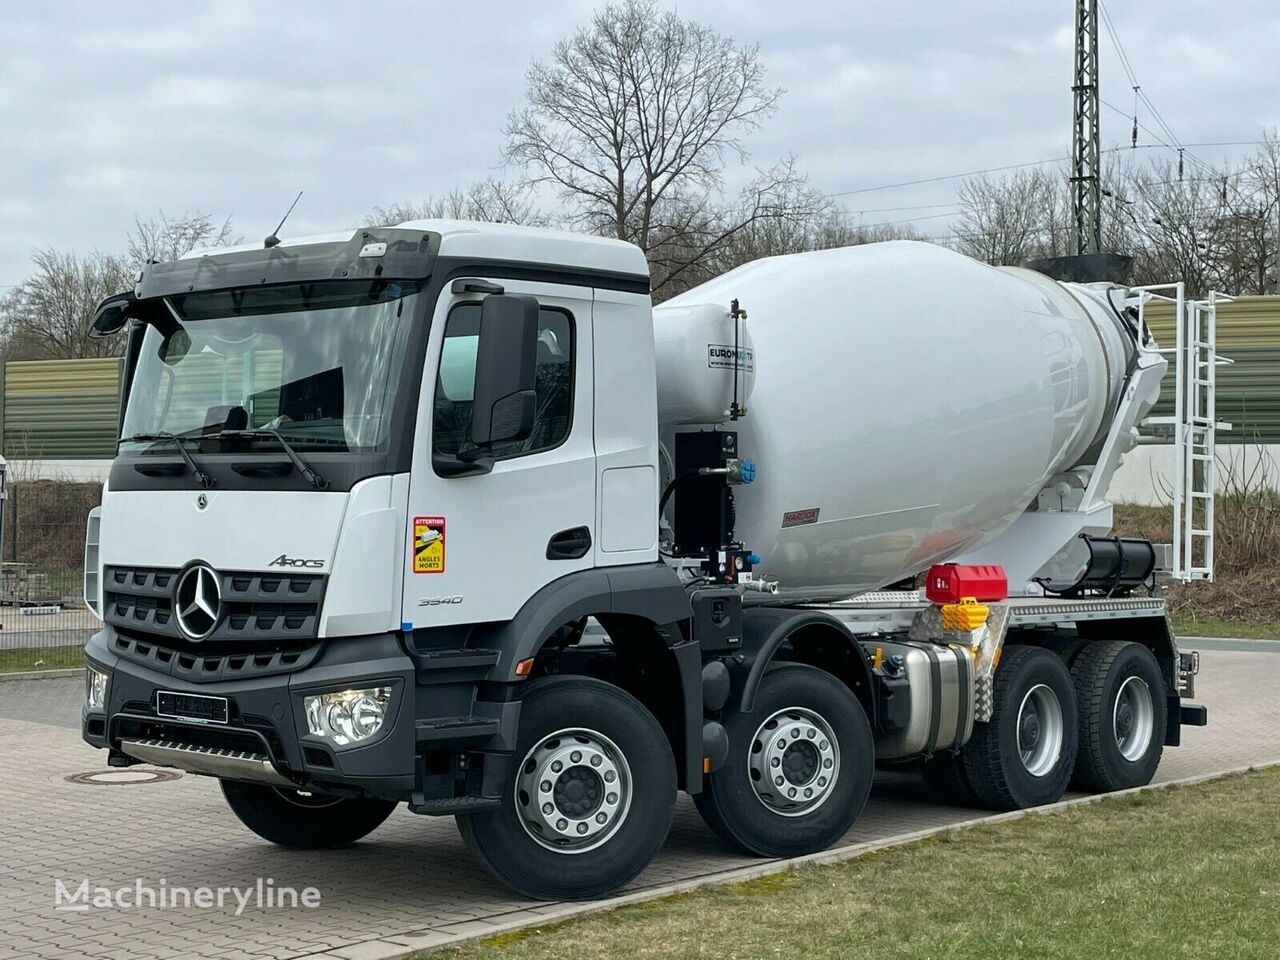 Euromix MTP MTP EM 9 L en el chasis Mercedes-Benz Arocs 5 3540 camión hormigonera nueva